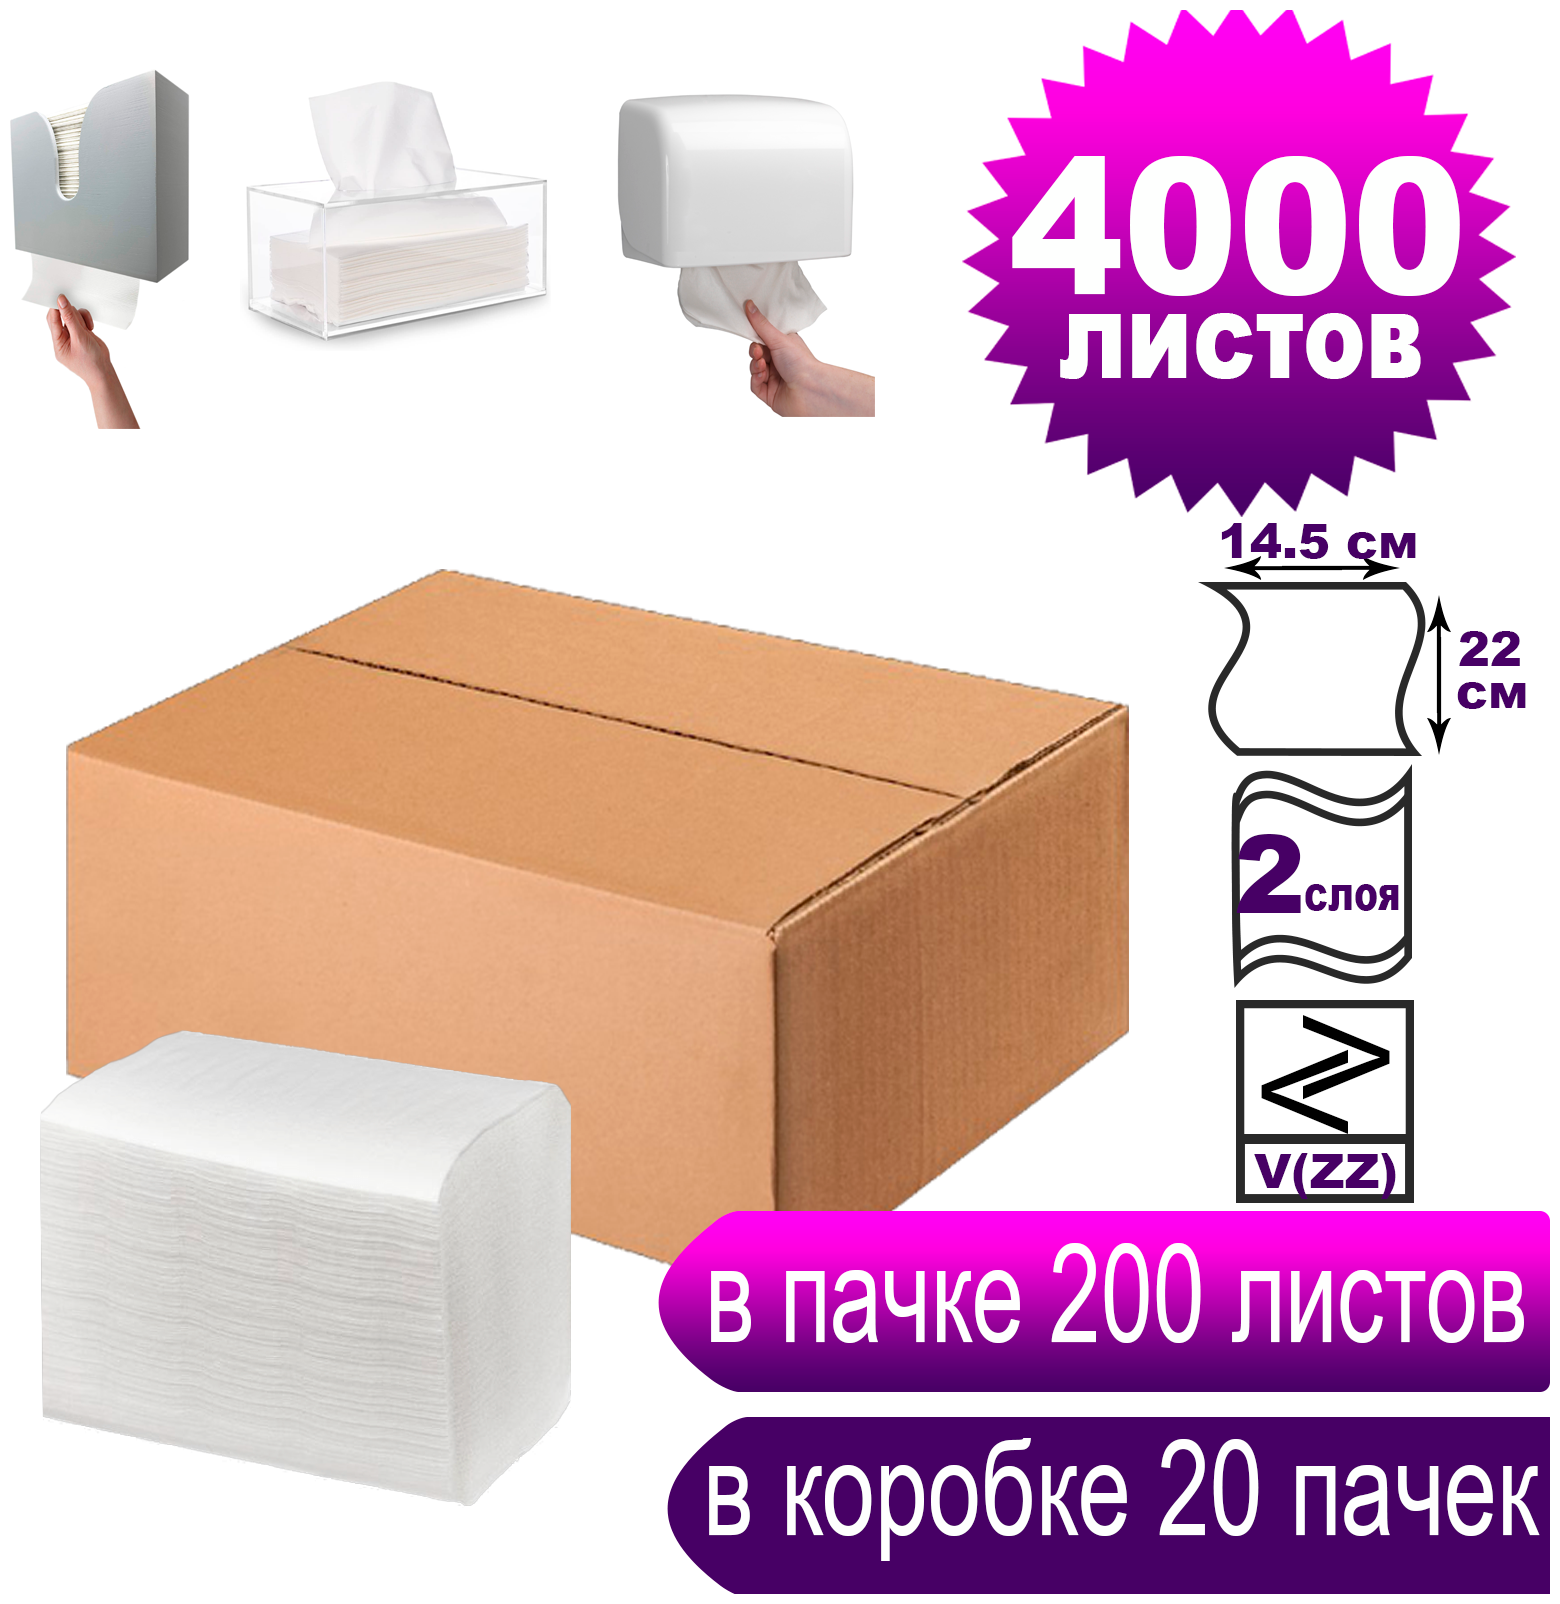 Салфетки бумажные для диспенсера V(ZZ) сложения двухслойные белые 4000 листов/размер 22 *14,5 см/ 20 пачек в коробке/в пачке по 200 л/ система H4